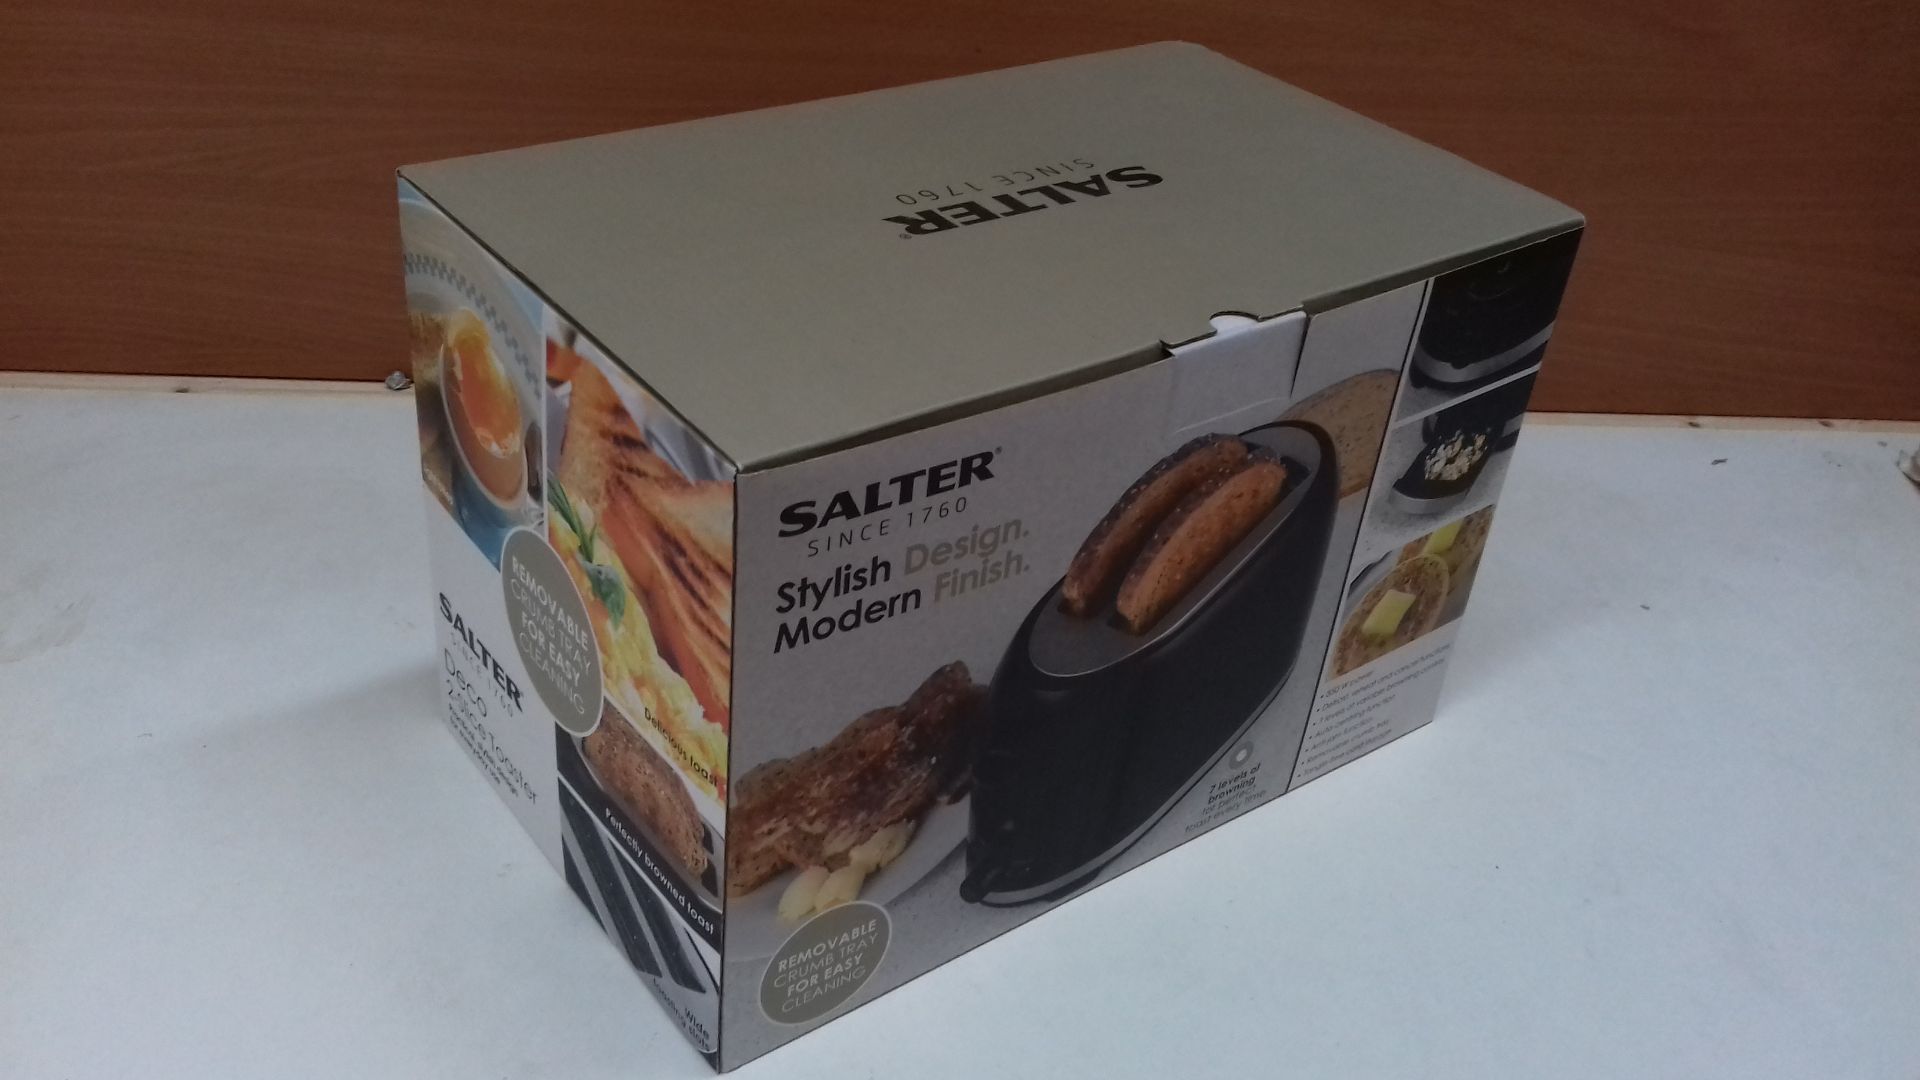 RRP £18.98 Salter EK2937 Deco 2-Slice Toaster - Image 2 of 2